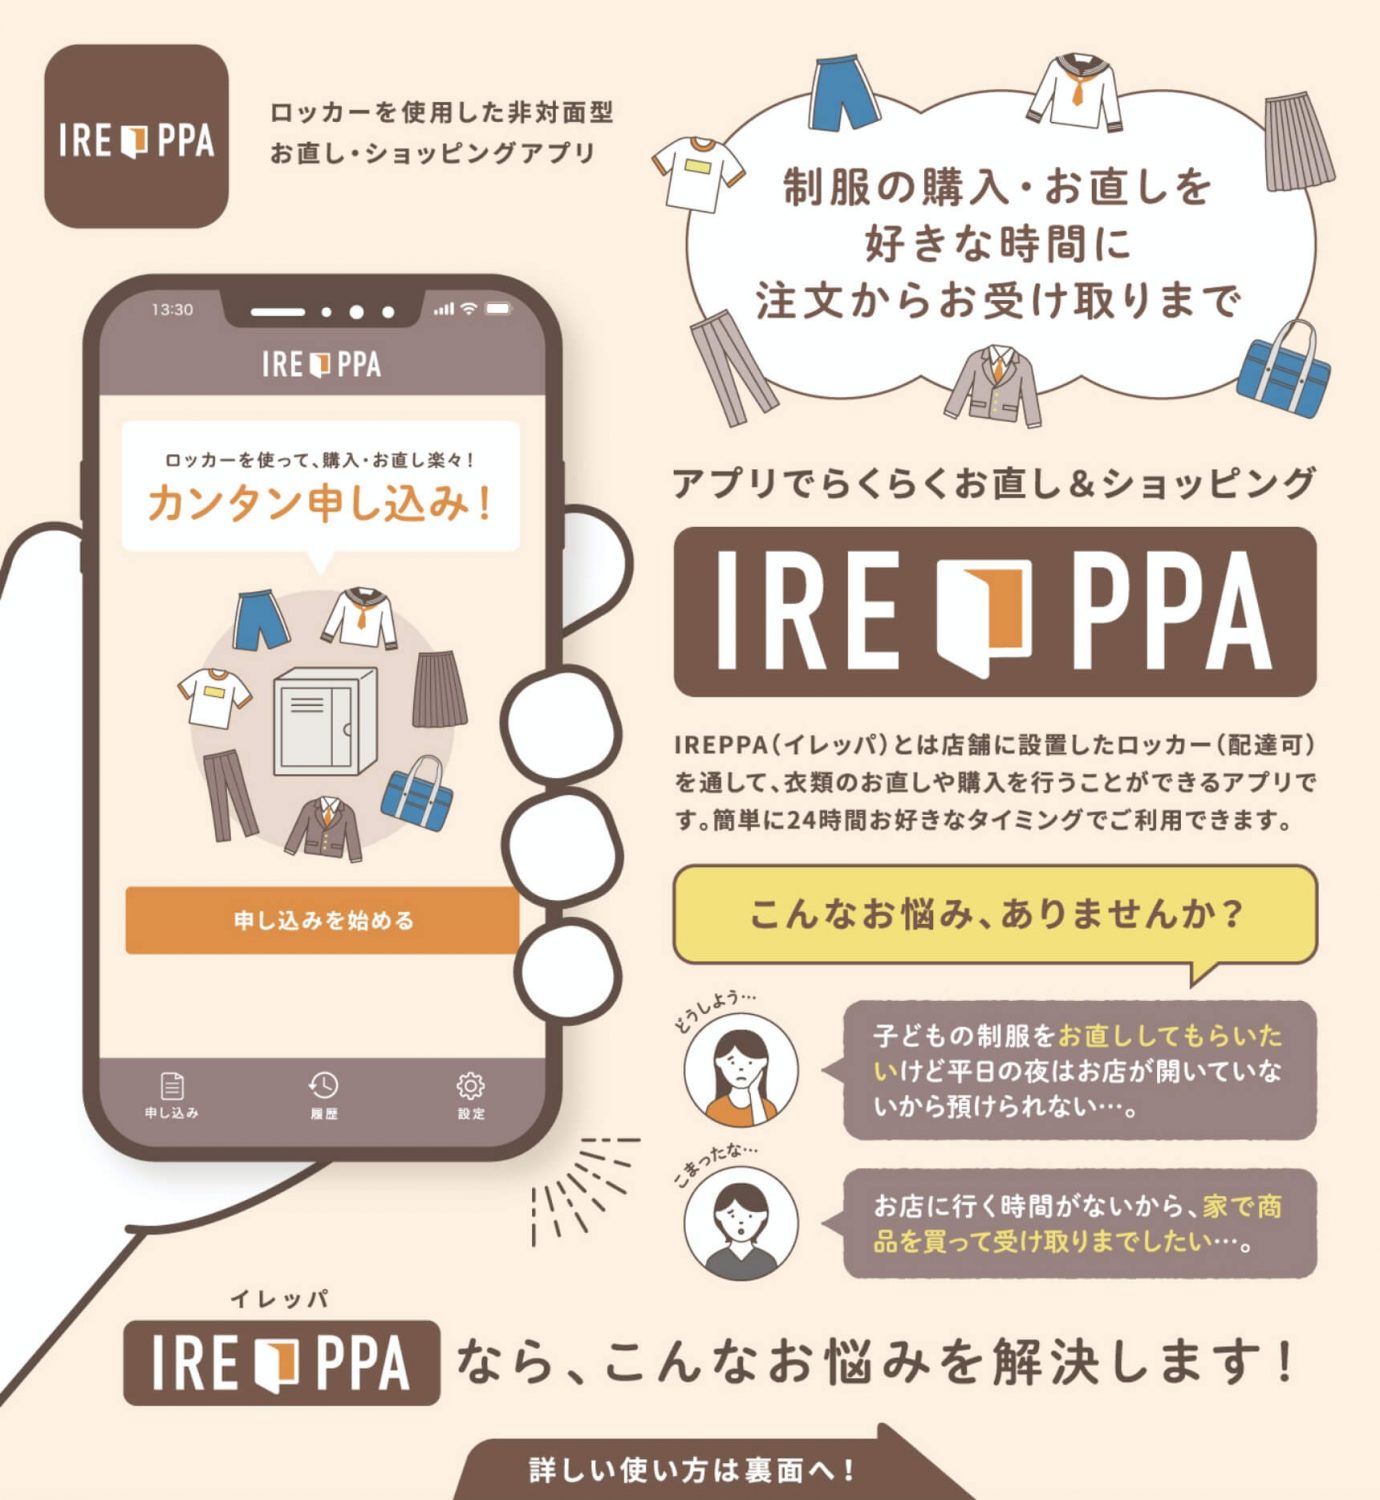 ロッカーを使用した非対面型お直し・ショッピングアプリ「IREPPA」概要